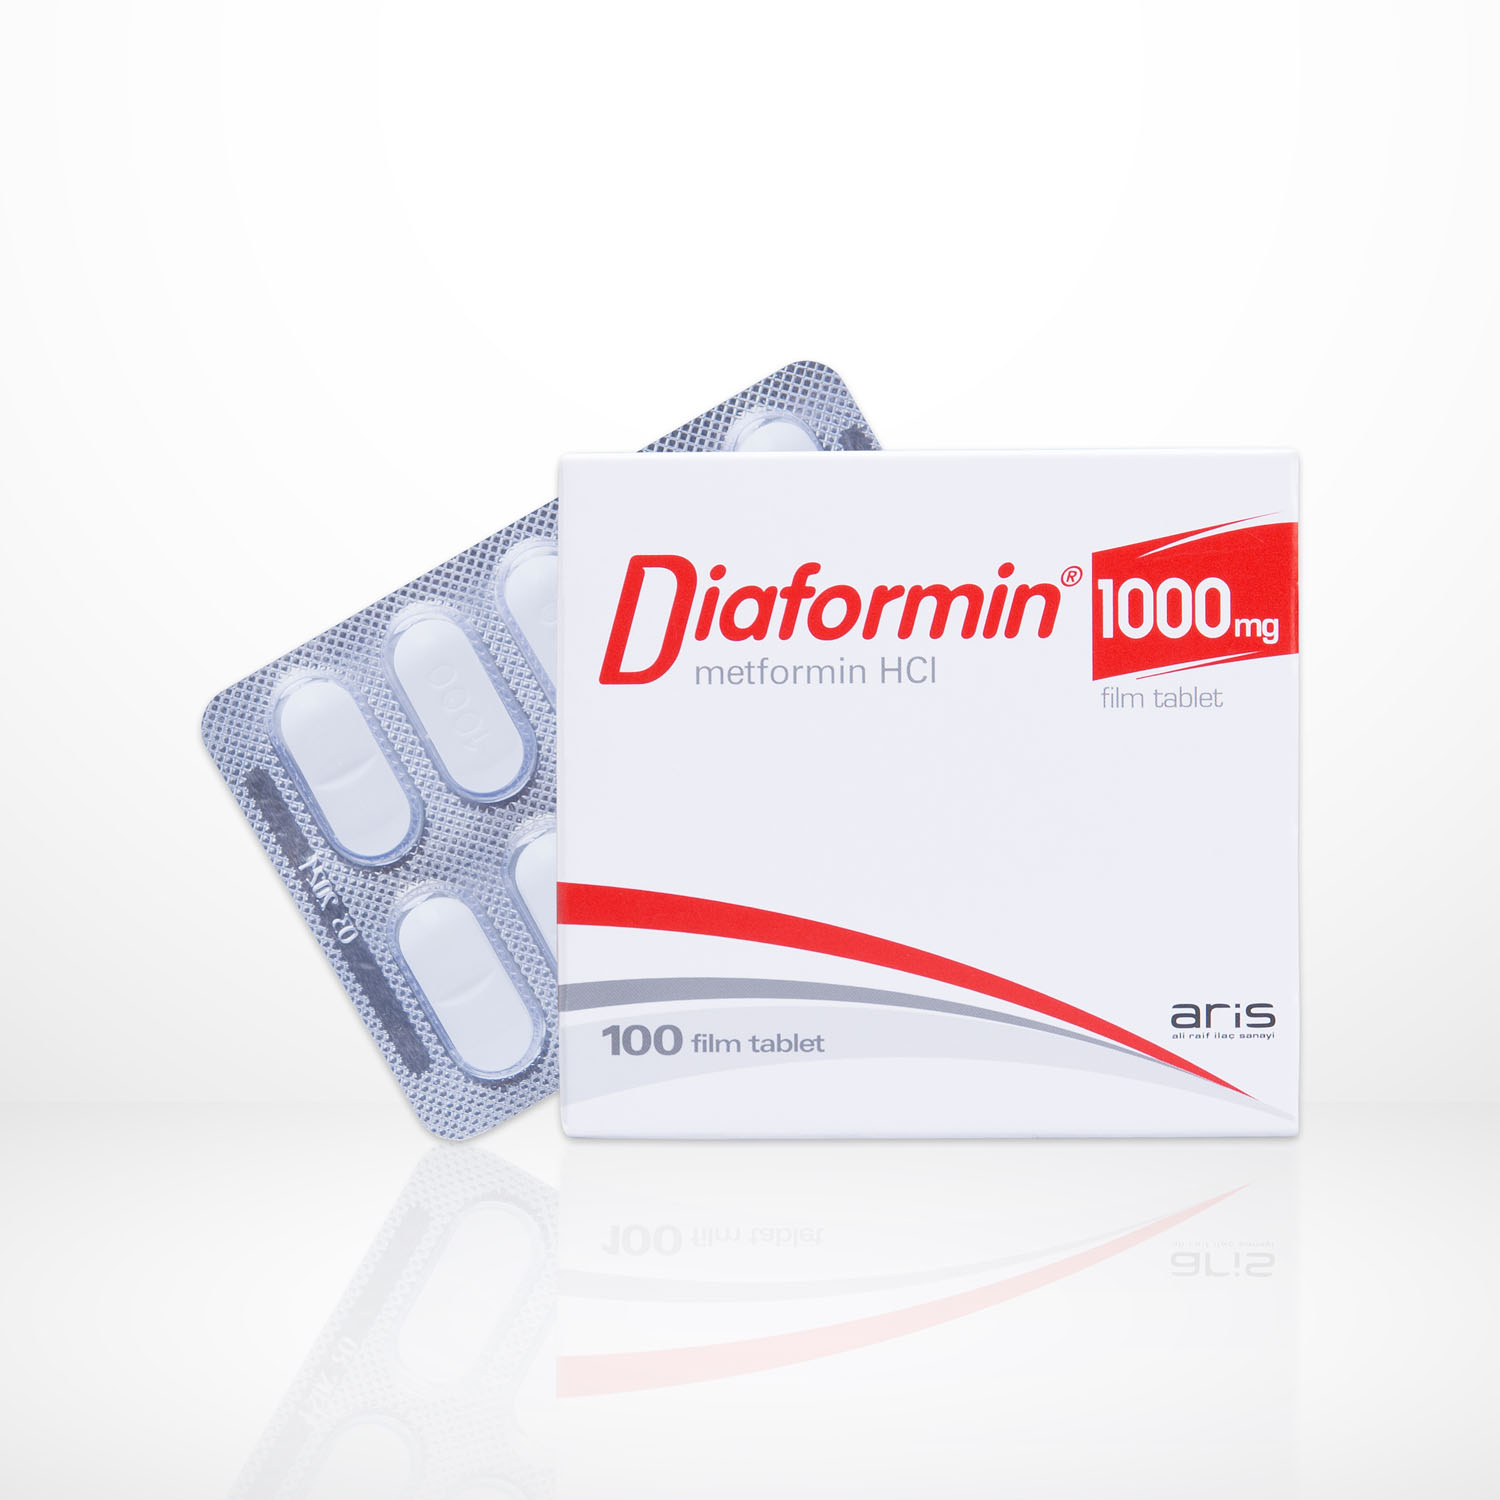 diaformin 1000 mg 100 tabs(metformin hydrochloride)